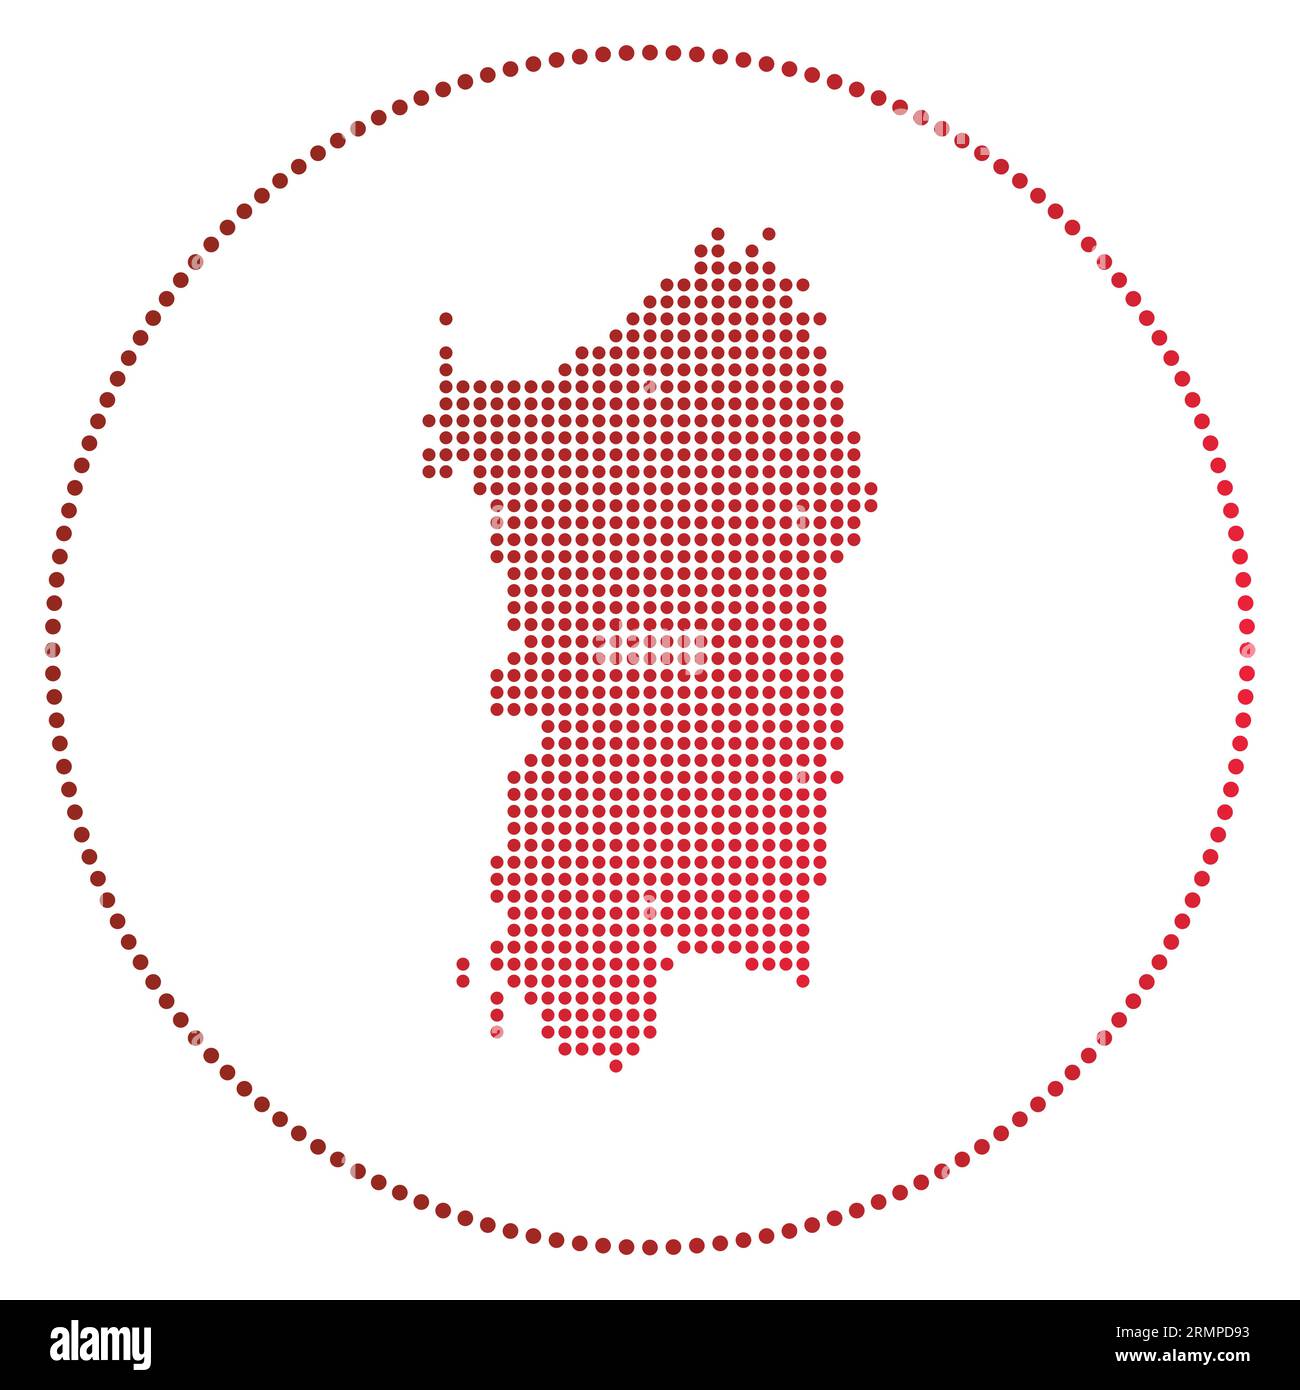 Badge digitale Sardegna. Mappa in stile punteggiato della Sardegna in cerchio. Icona tecnologica dell'isola con punti sfumati. Illustrazione vettoriale alla moda. Illustrazione Vettoriale